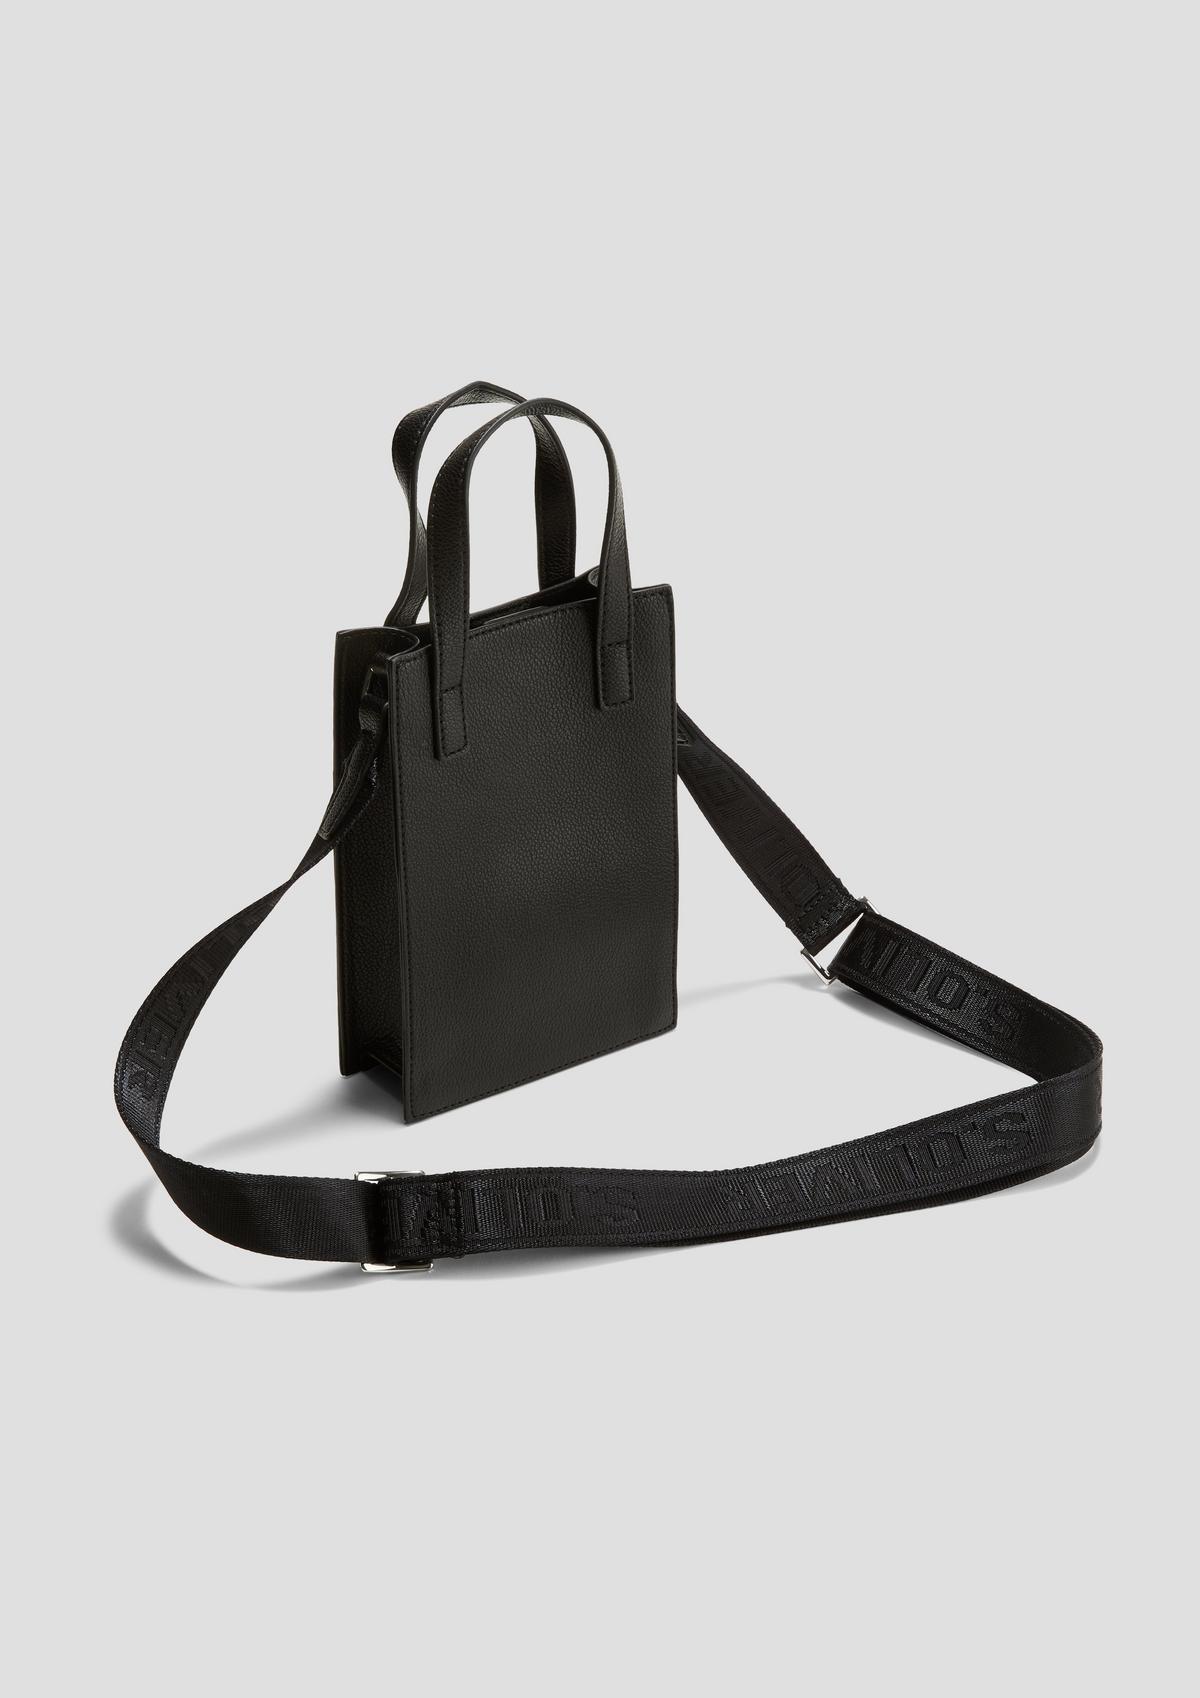 s.Oliver Cross-body bag with an adjustable shoulder strap